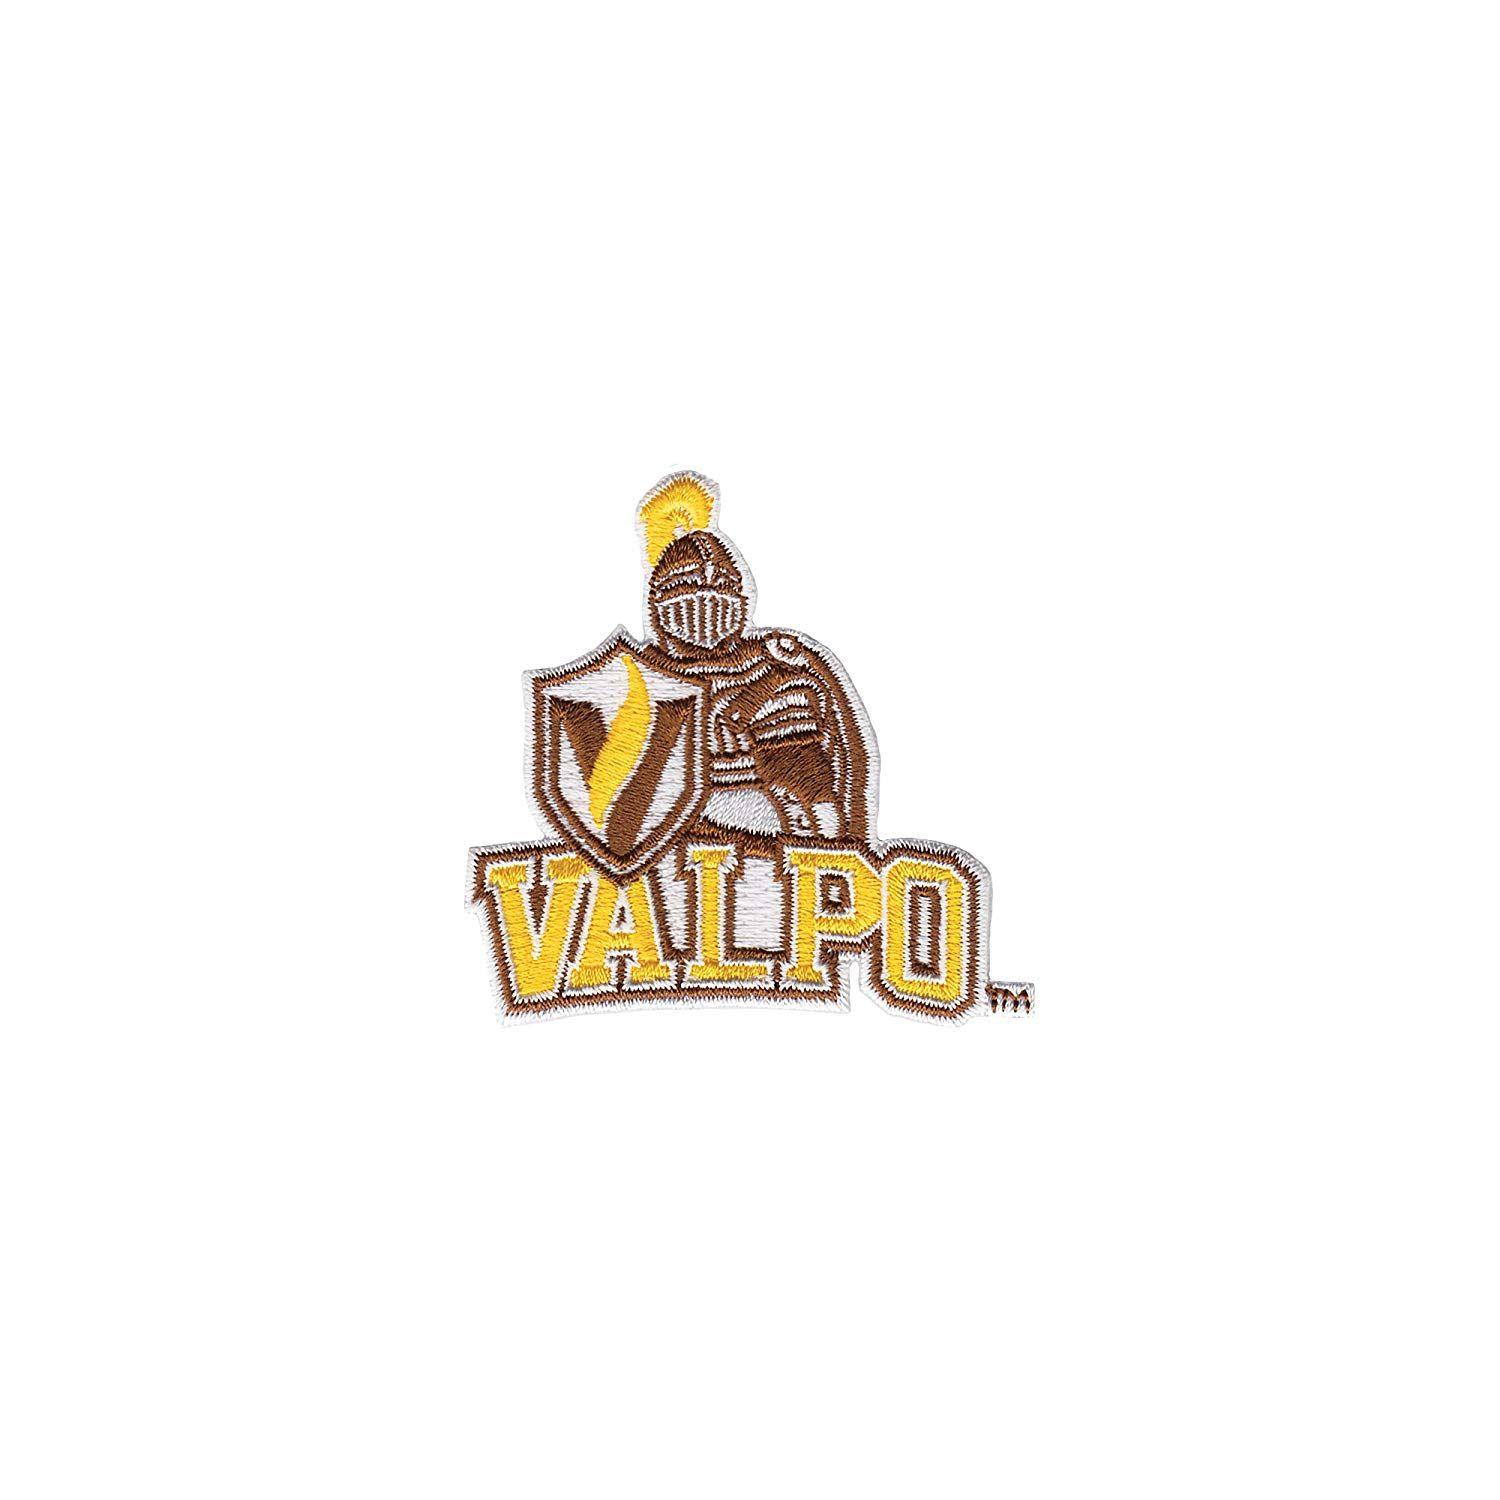 Valpraiso Logo - Amazon.com: Tervis 1062222 Valparaiso Crusaders Logo Tumbler with ...